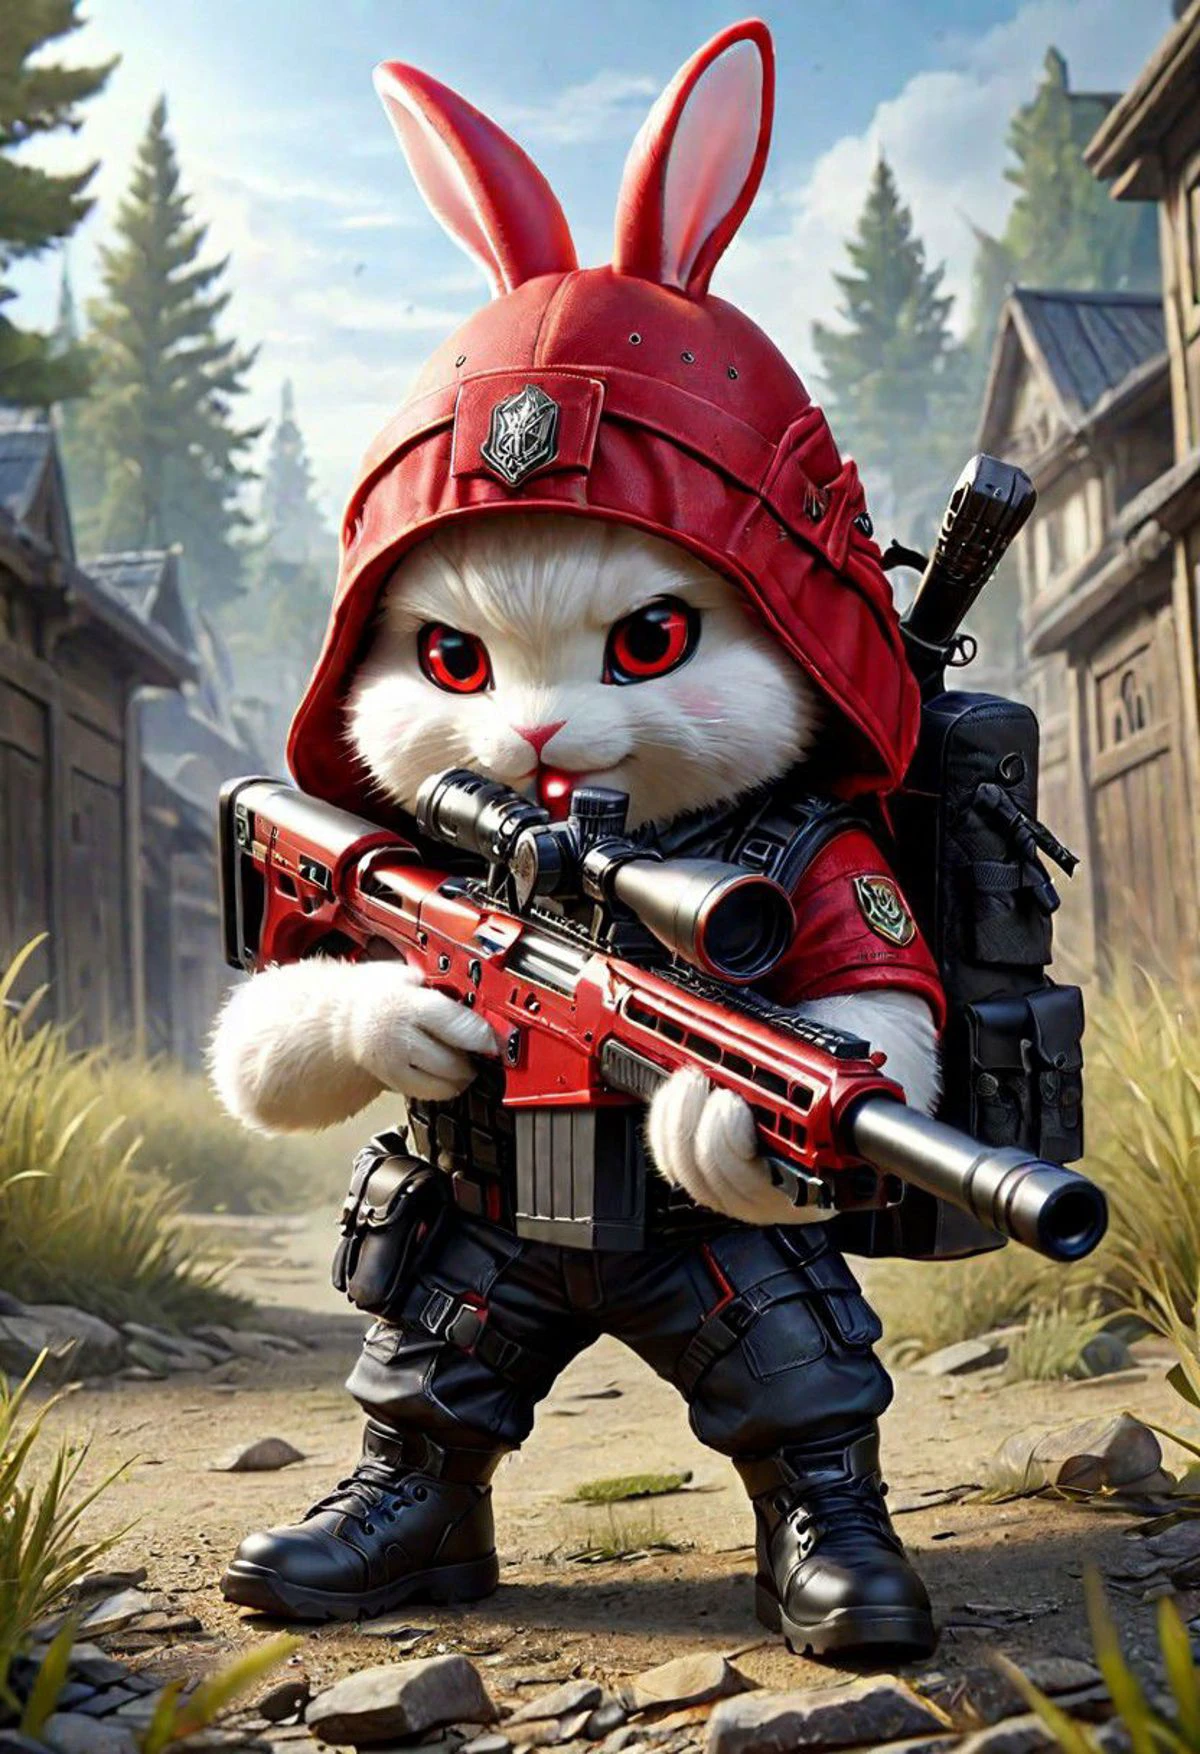 红兔, 赤壁尺寸, 战术背心, 戴帽子, 穿鞋, 手持狙击步枪, 射击, 非常详细, 高清, 杰作, 最好的质量, 超详细, 极其详细